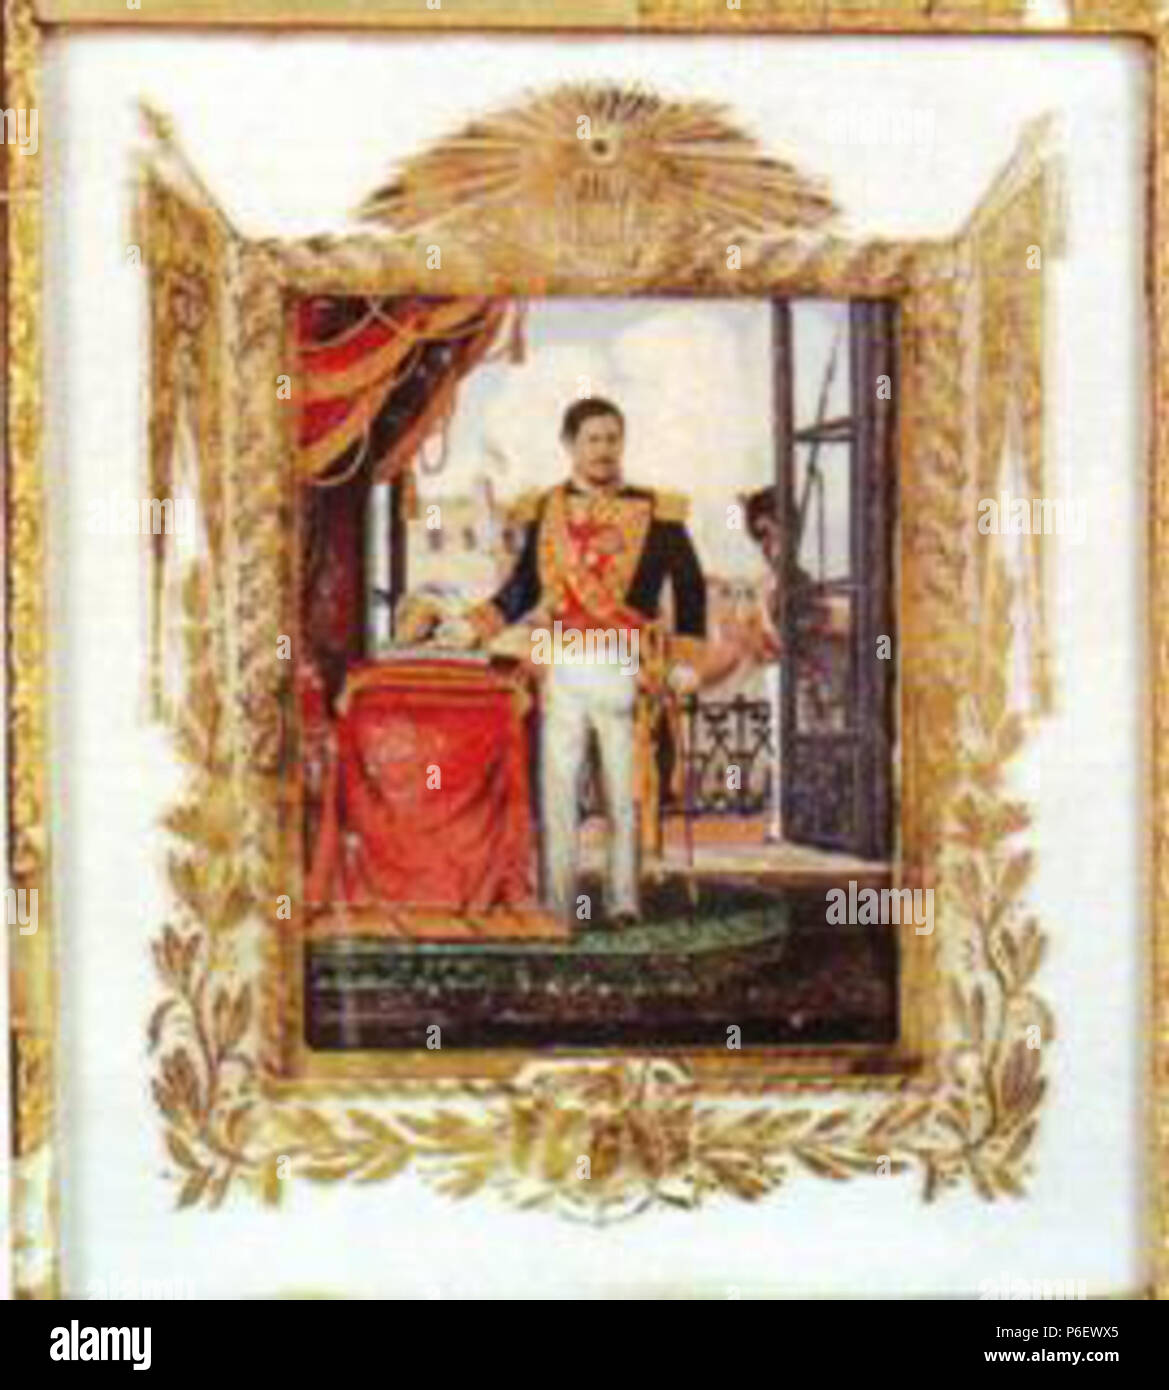 Español: Cuadro del generale Rafael Carrera, fundador de la República de Guatemala. 1850 9 Carrerafundador Foto Stock